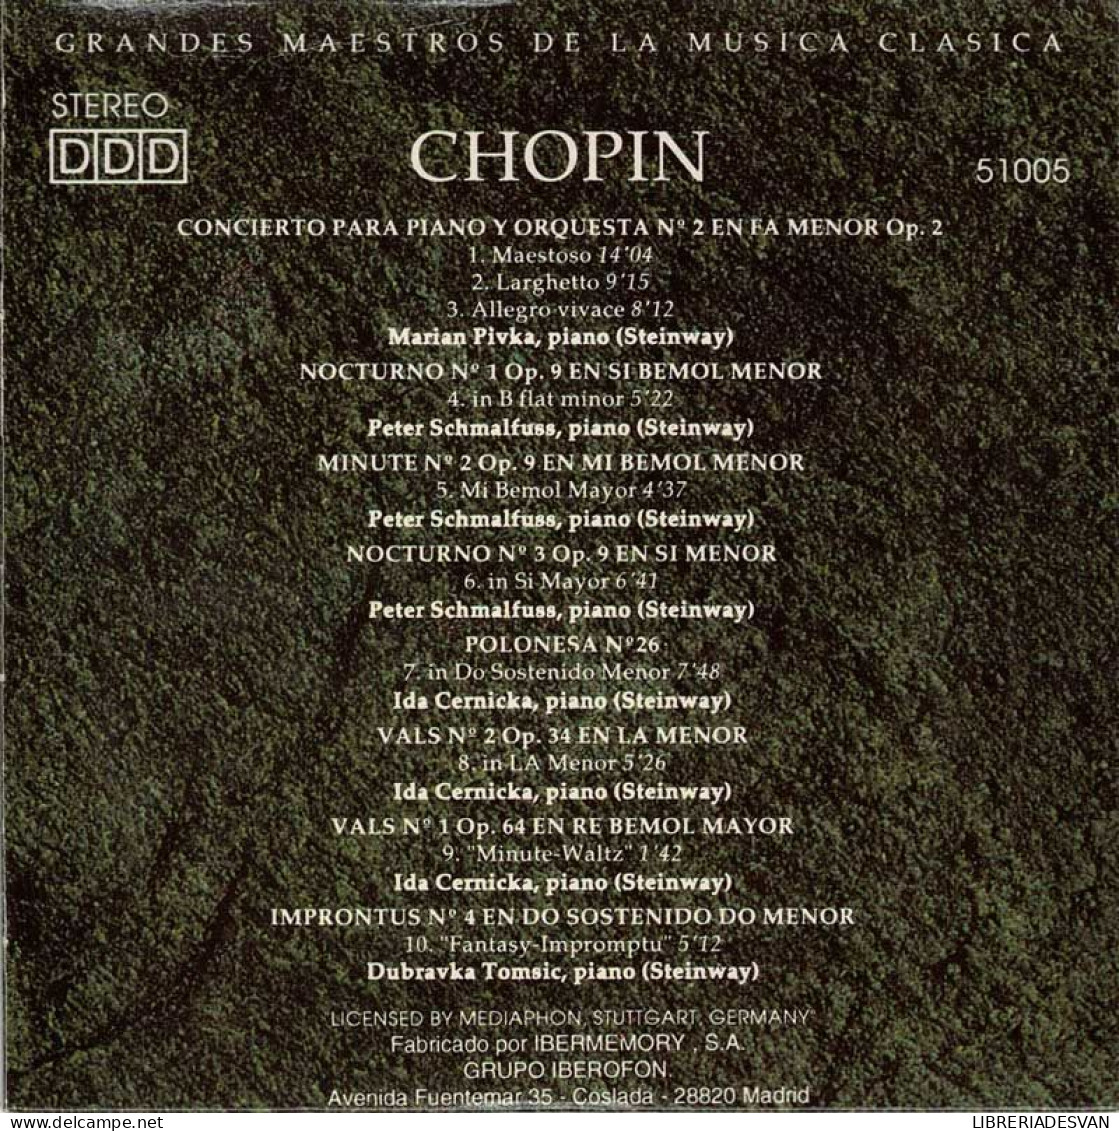 Chopin - Concierto Para Piano Y Orquesta No. 2. Nocturnos. Minute. Valses. Fantasías. Improntus. CD - Classique